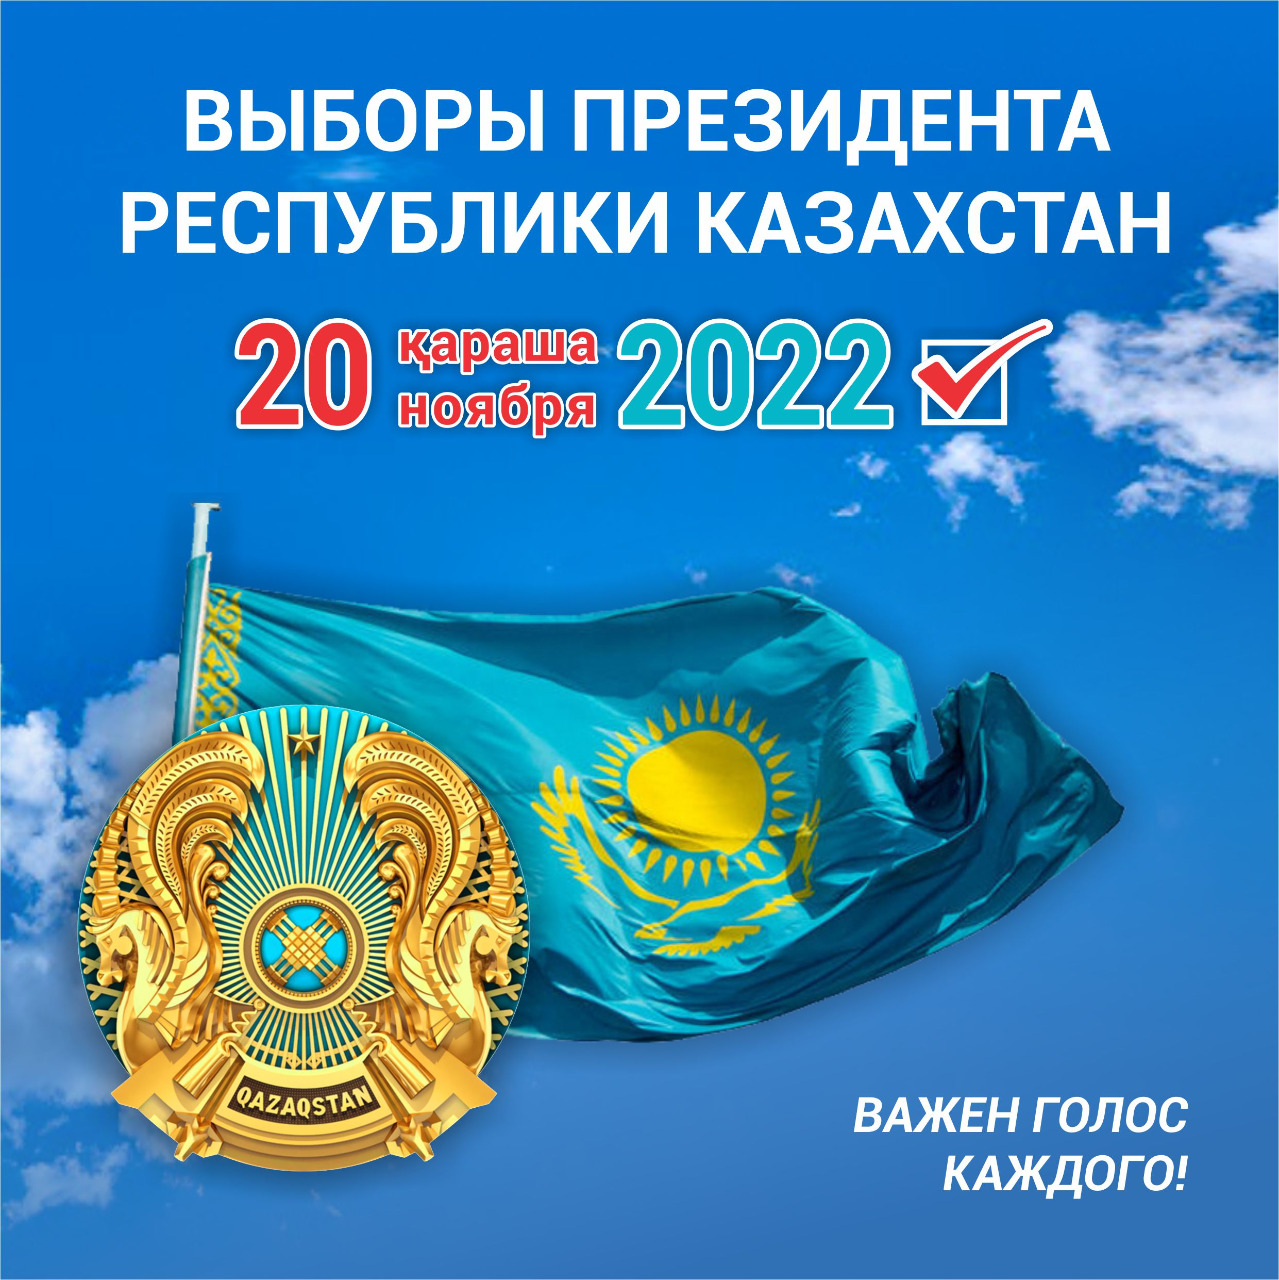 20 НОЯБРЯ 2022 ГОДА ВЫБОРЫ ПРЕЗИДЕНТА РЕСПУБЛИКИ КАЗАХСТАН ВАЖЕН ГОЛОС КАЖДОГО!